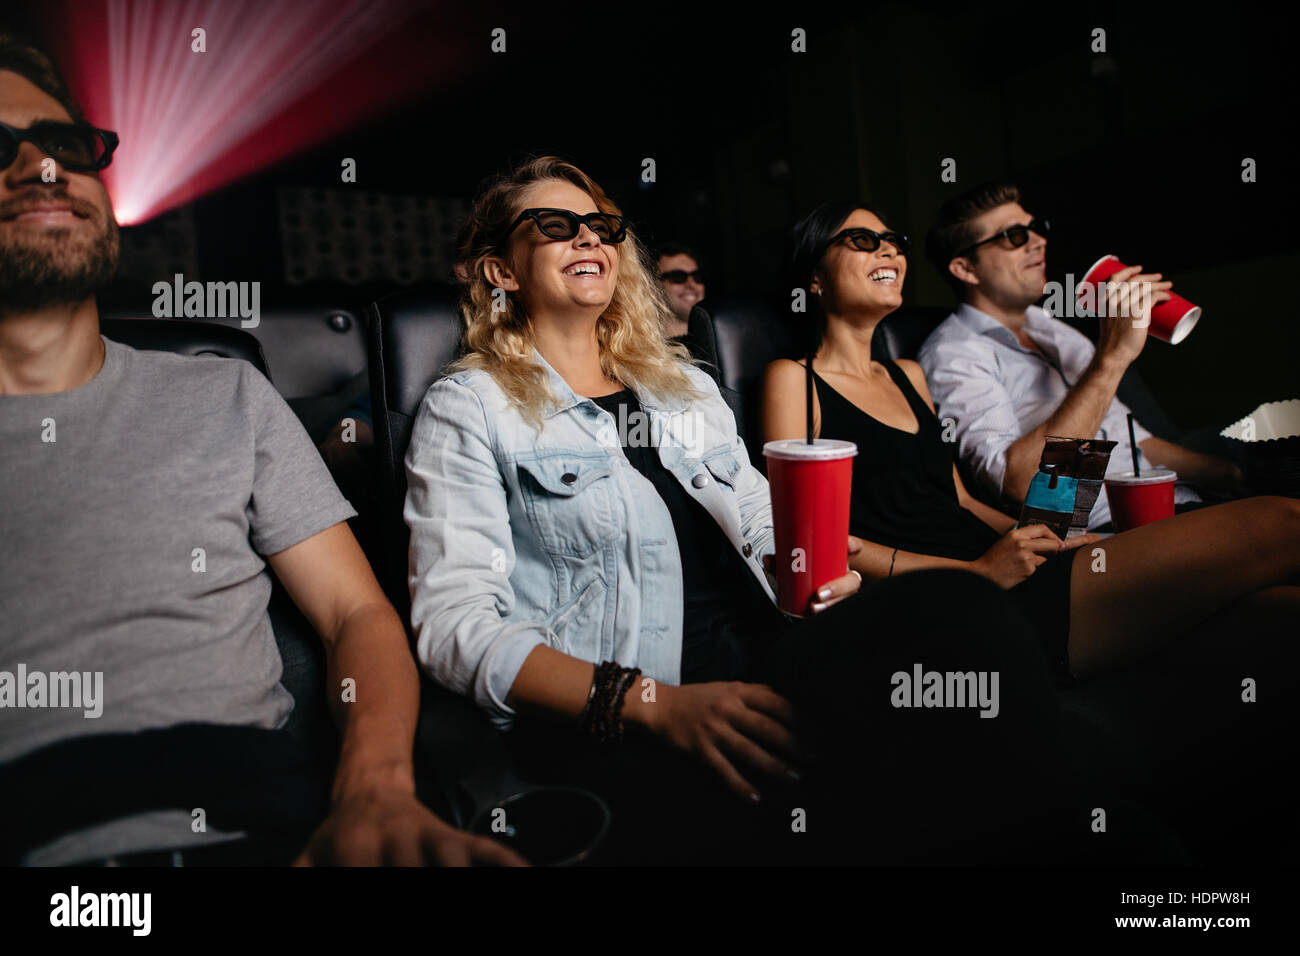 Junge Frauen und Männer, die 3d Film im Kino ansehen. Gruppe von Personen bei Theaterbestuhlung mit 3d Brille und Getränke. Stockfoto